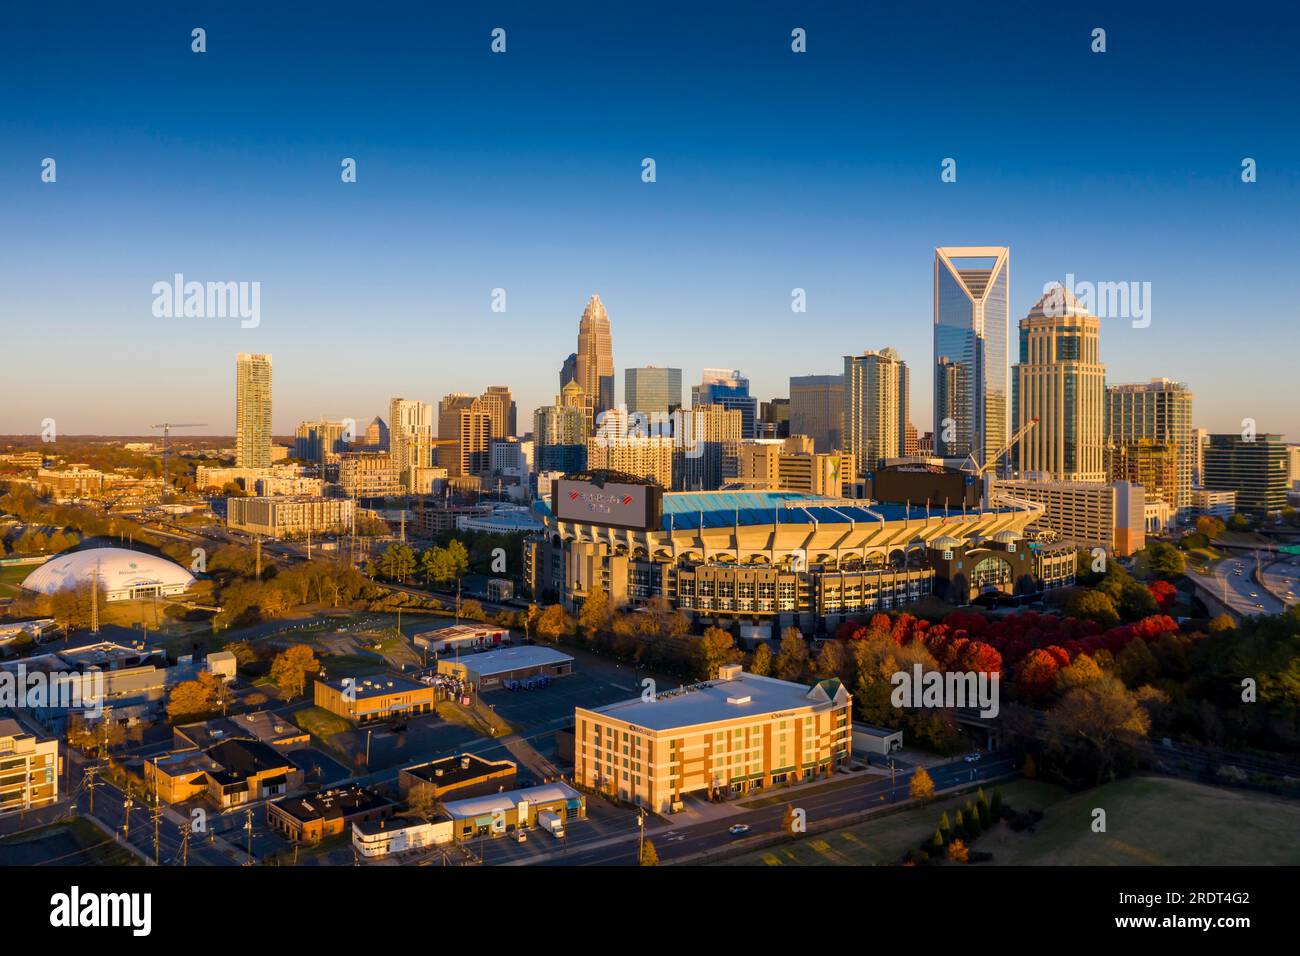 Charlotte è la città più popolosa dello stato americano della Carolina del Nord. Situata nel Piemonte, è la 16° città più popolosa degli Stati Uniti Foto Stock